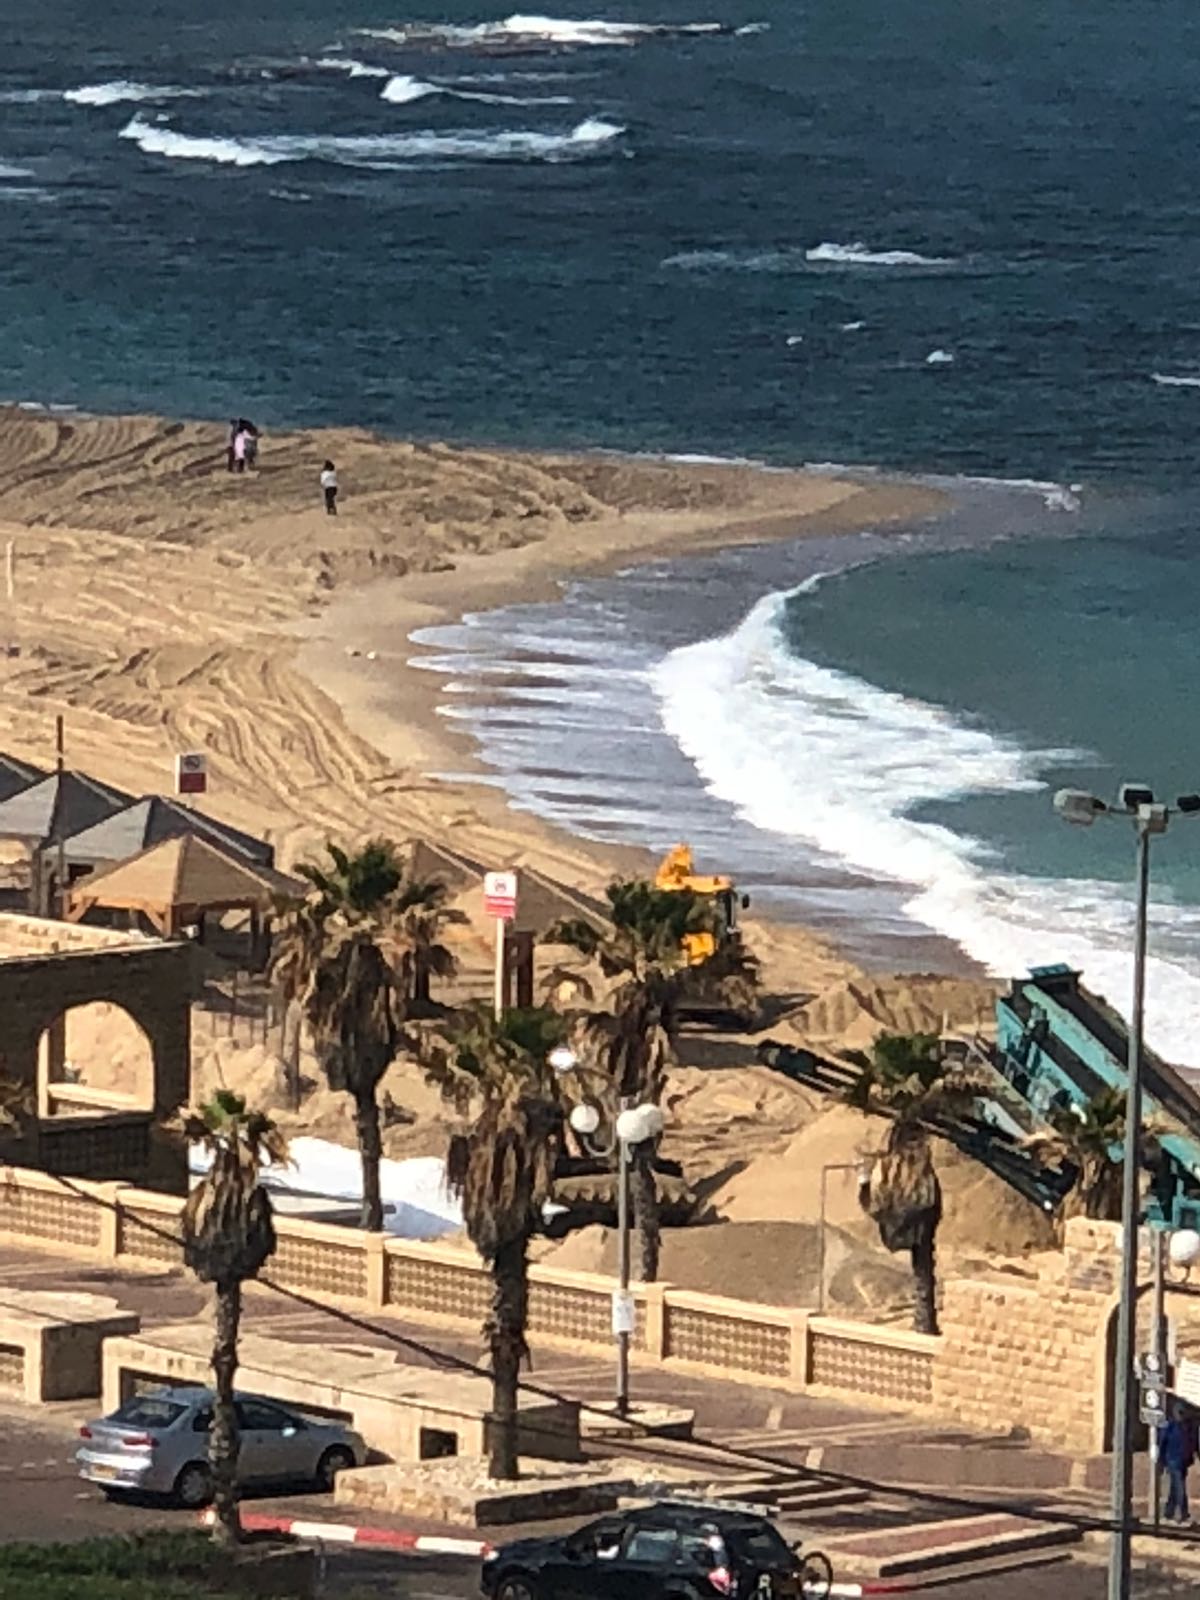 فيديو: عمليات تنظيف على شاطئ يافا تمهيداً لافتتاح موسم السباحة 